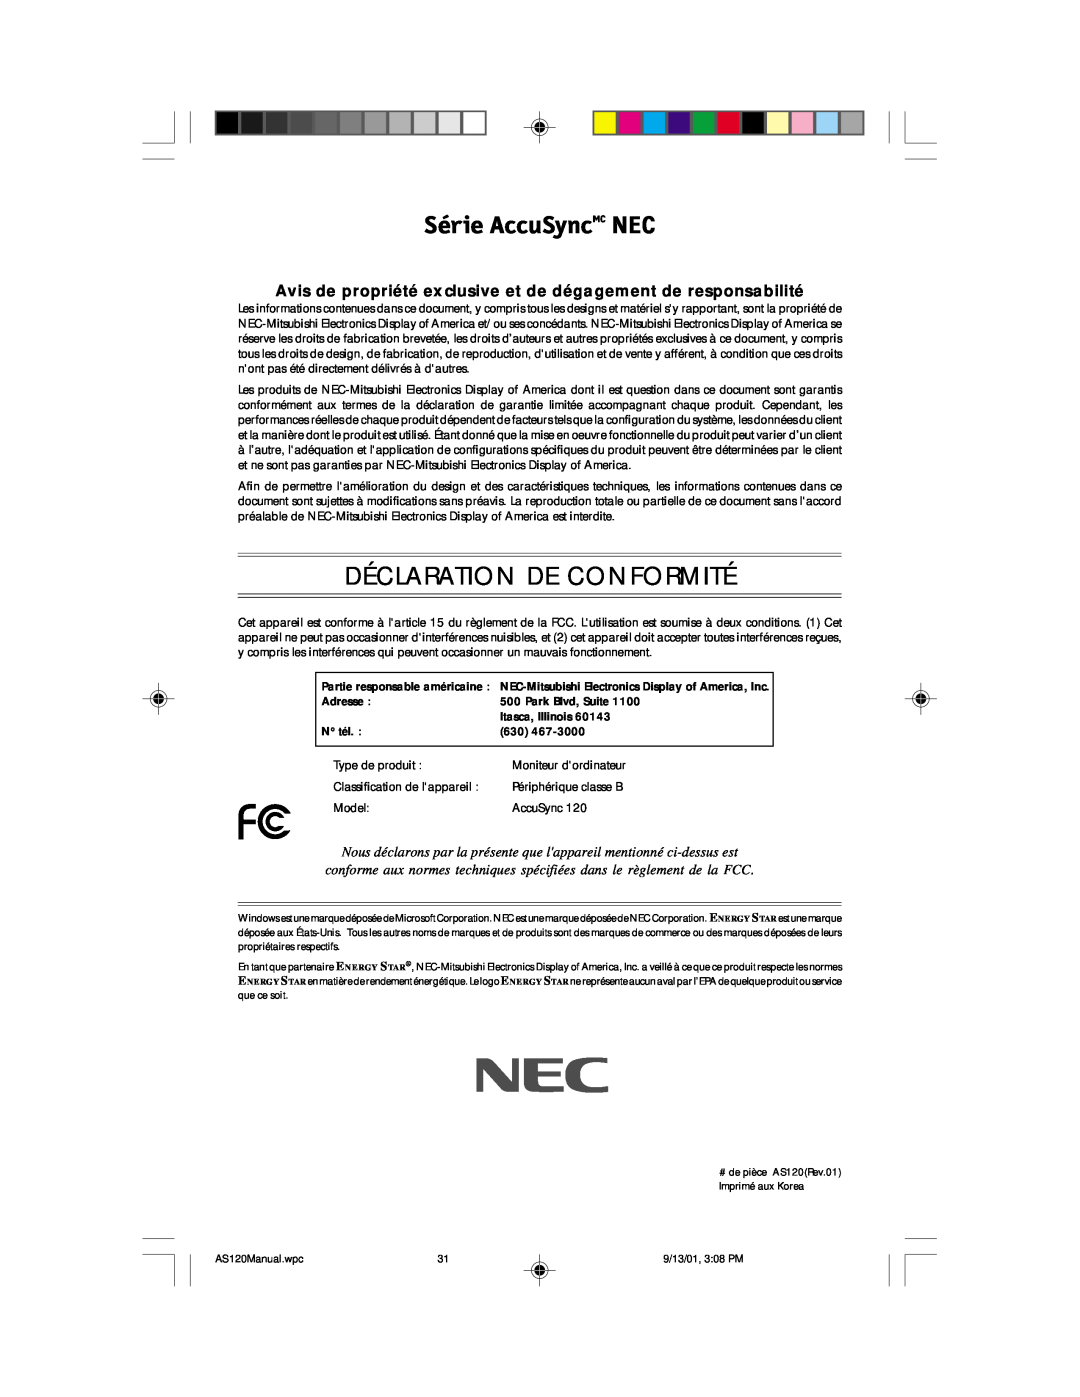 NEC AccuSync 120 user manual Série AccuSyncMC NEC, Déclaration De Conformité 